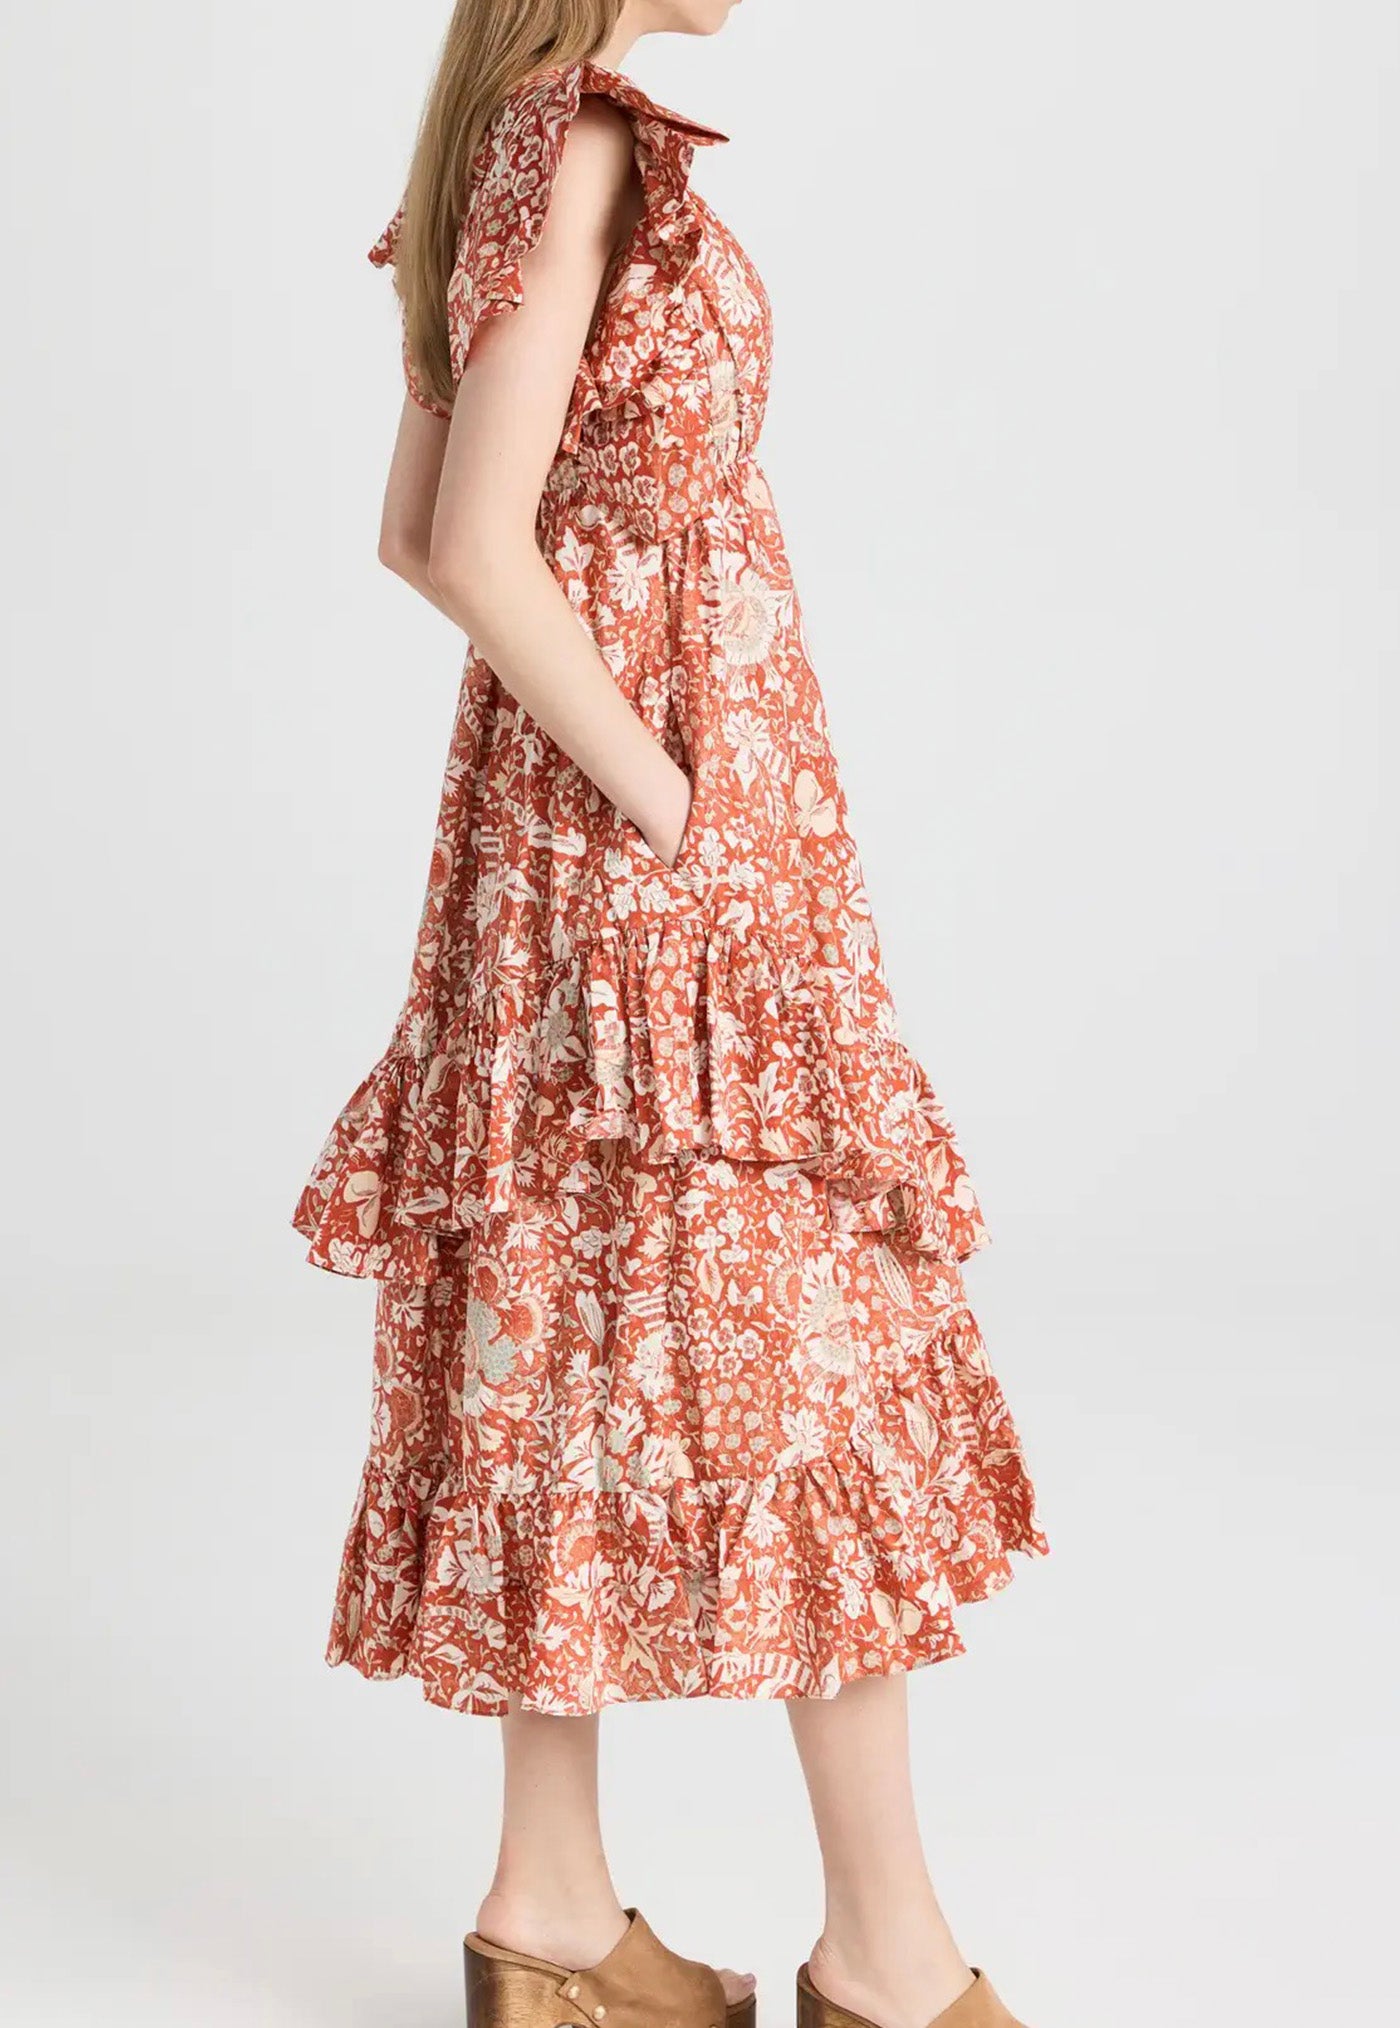 Delila Dress - Orange Blossom sold by Angel Divine